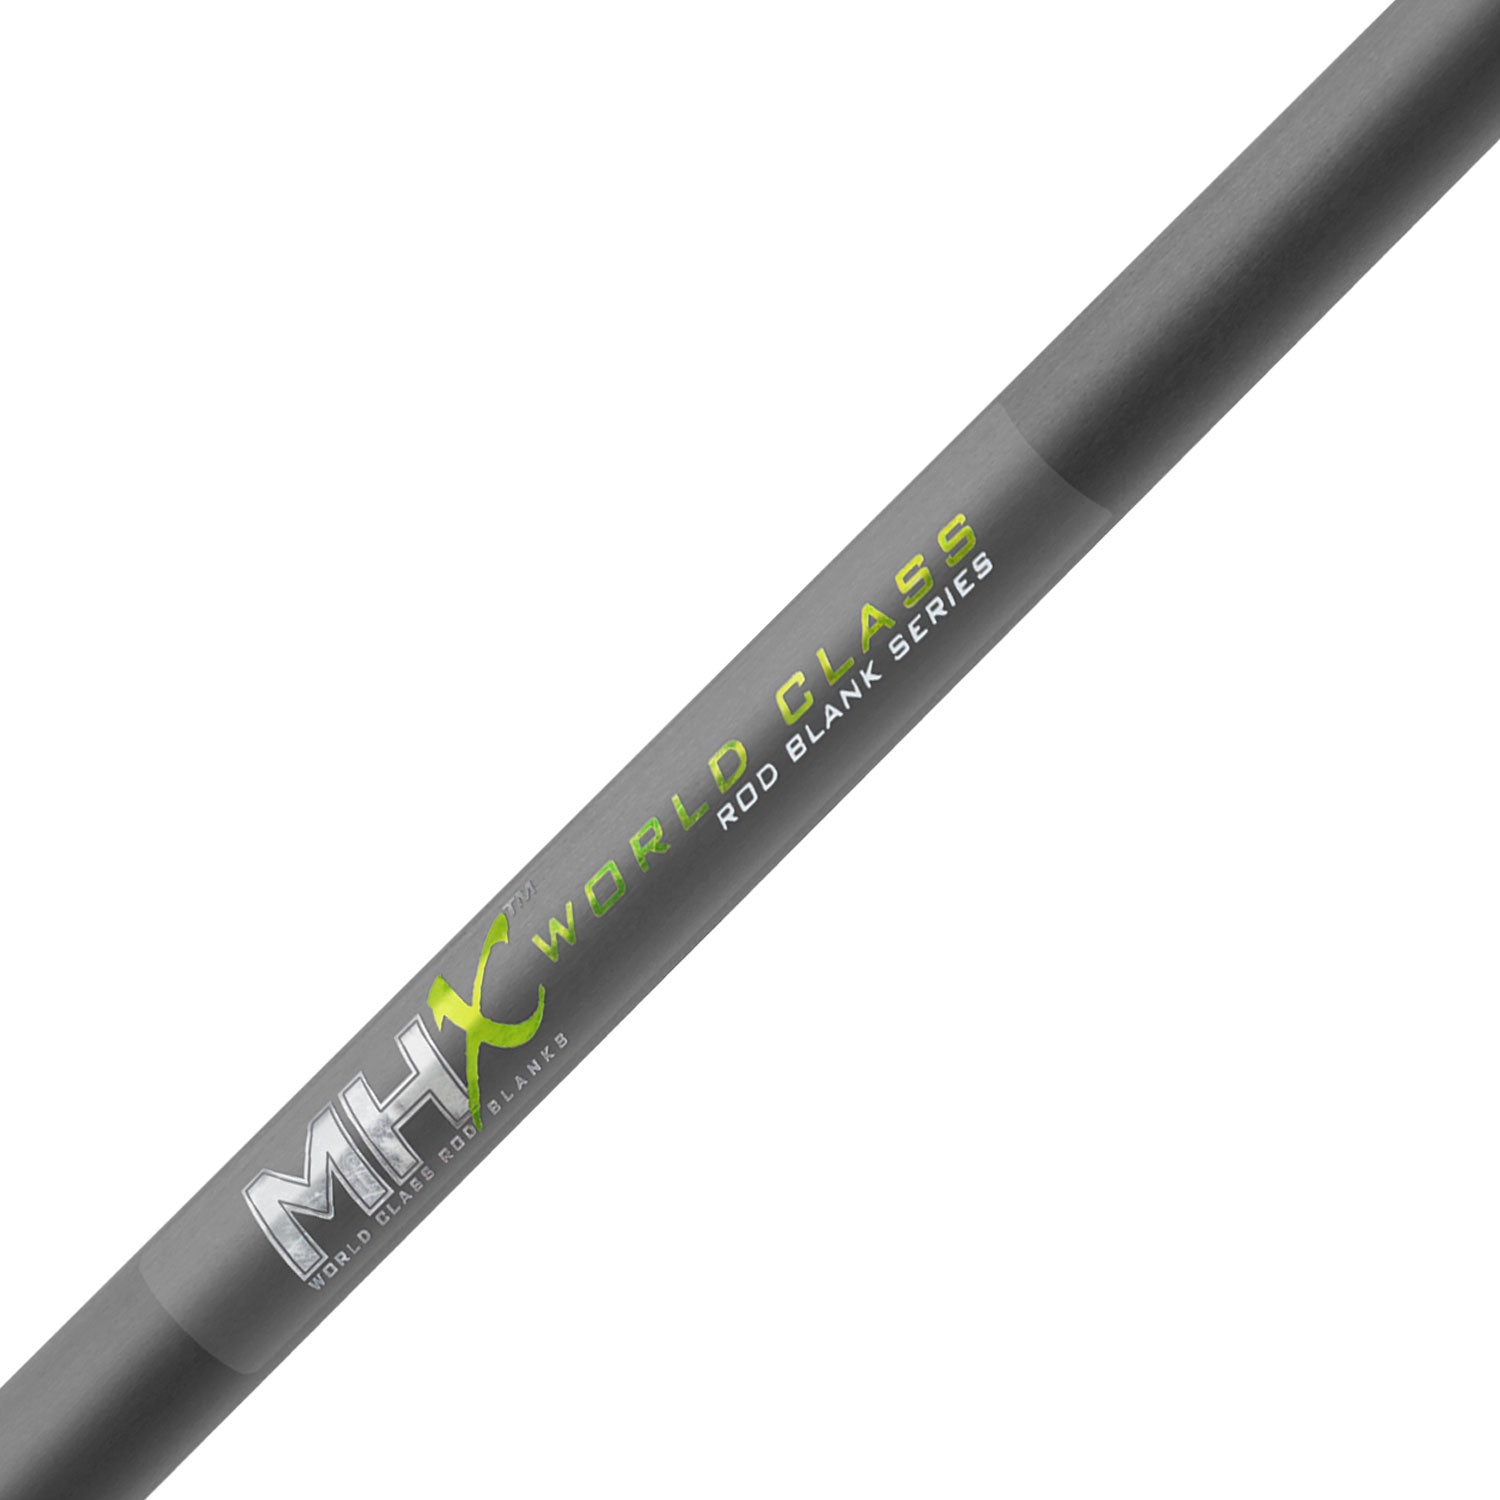 MHX 8'0 Med-Heavy Crankbait Rod Blank - CB965-Blend